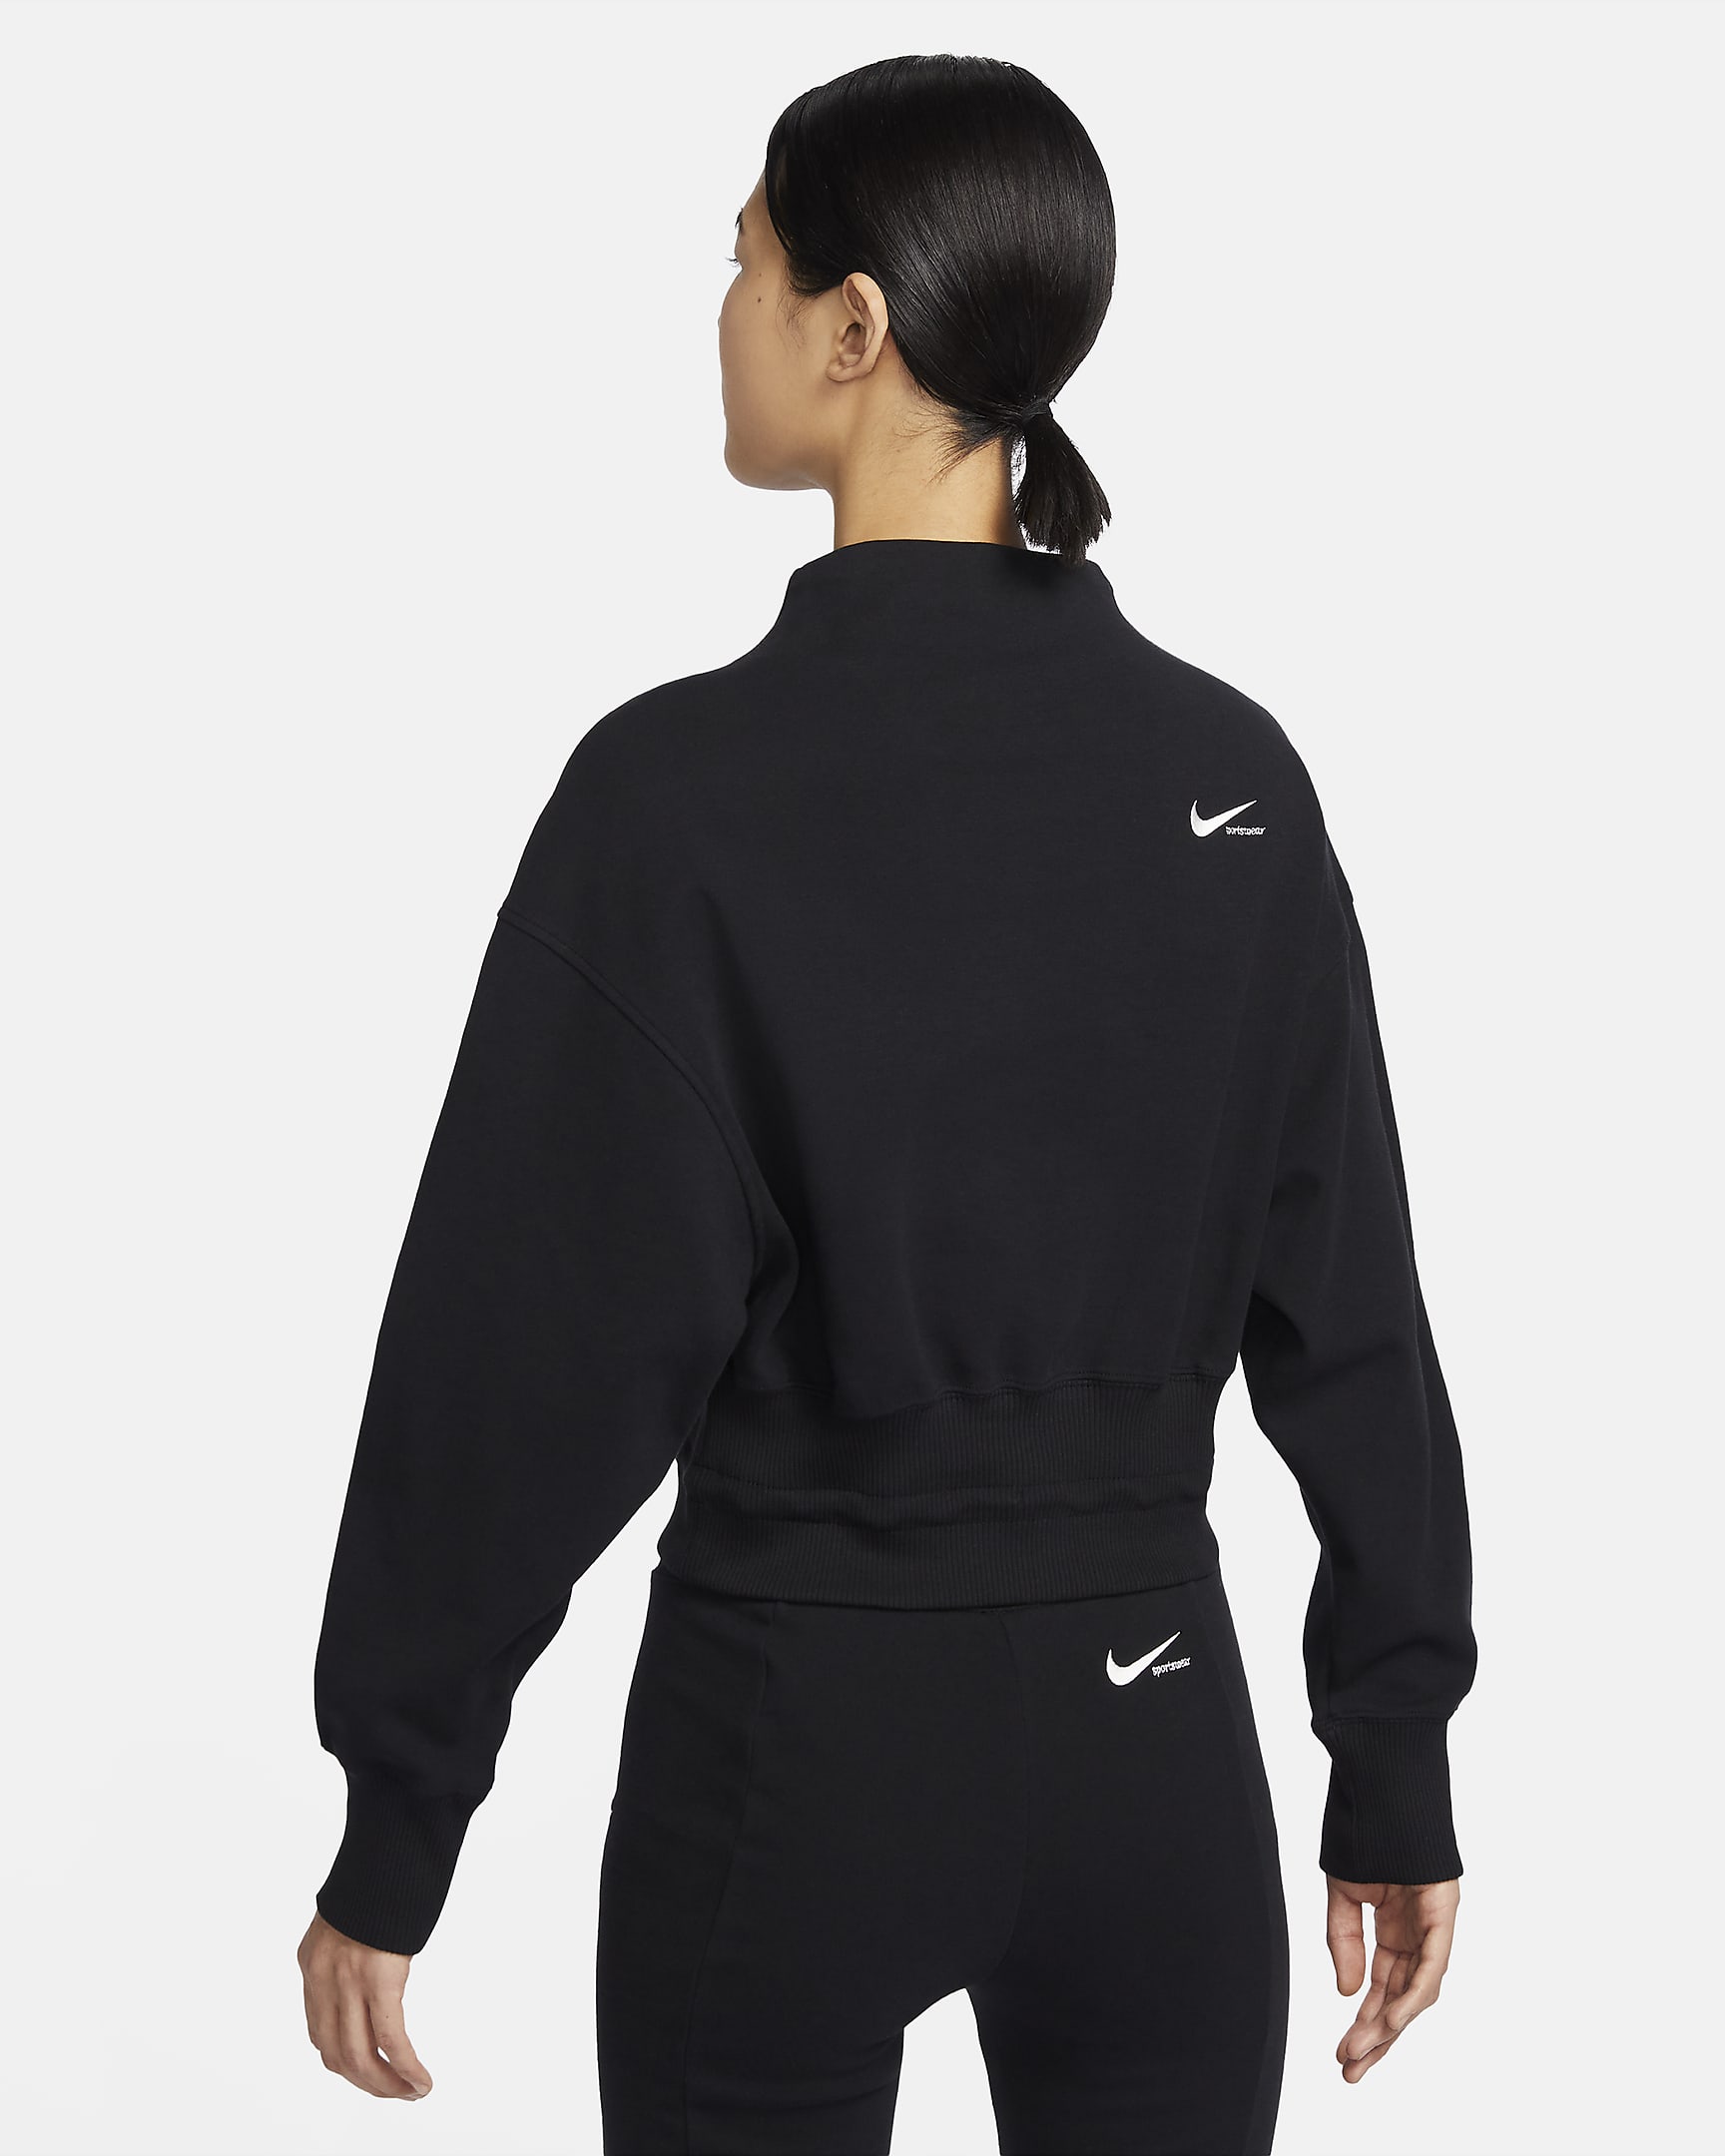 Nike Sportswear Collection Women's Mock-Neck Top. Nike JP